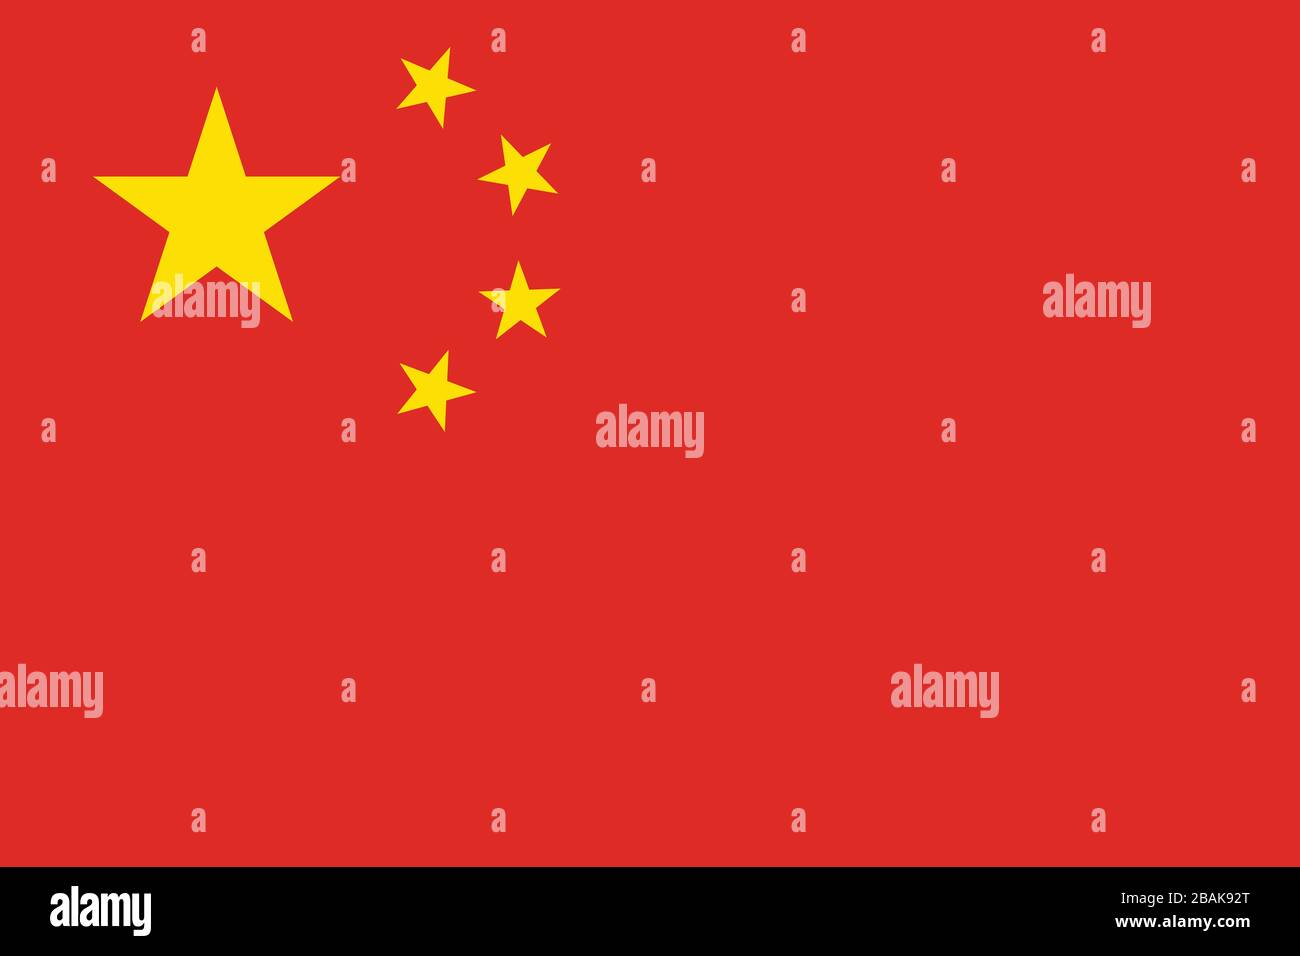 Flagge Chinas - Standardverhältnis der chinesischen Flagge - True RGB-Farbmodus Stockfoto